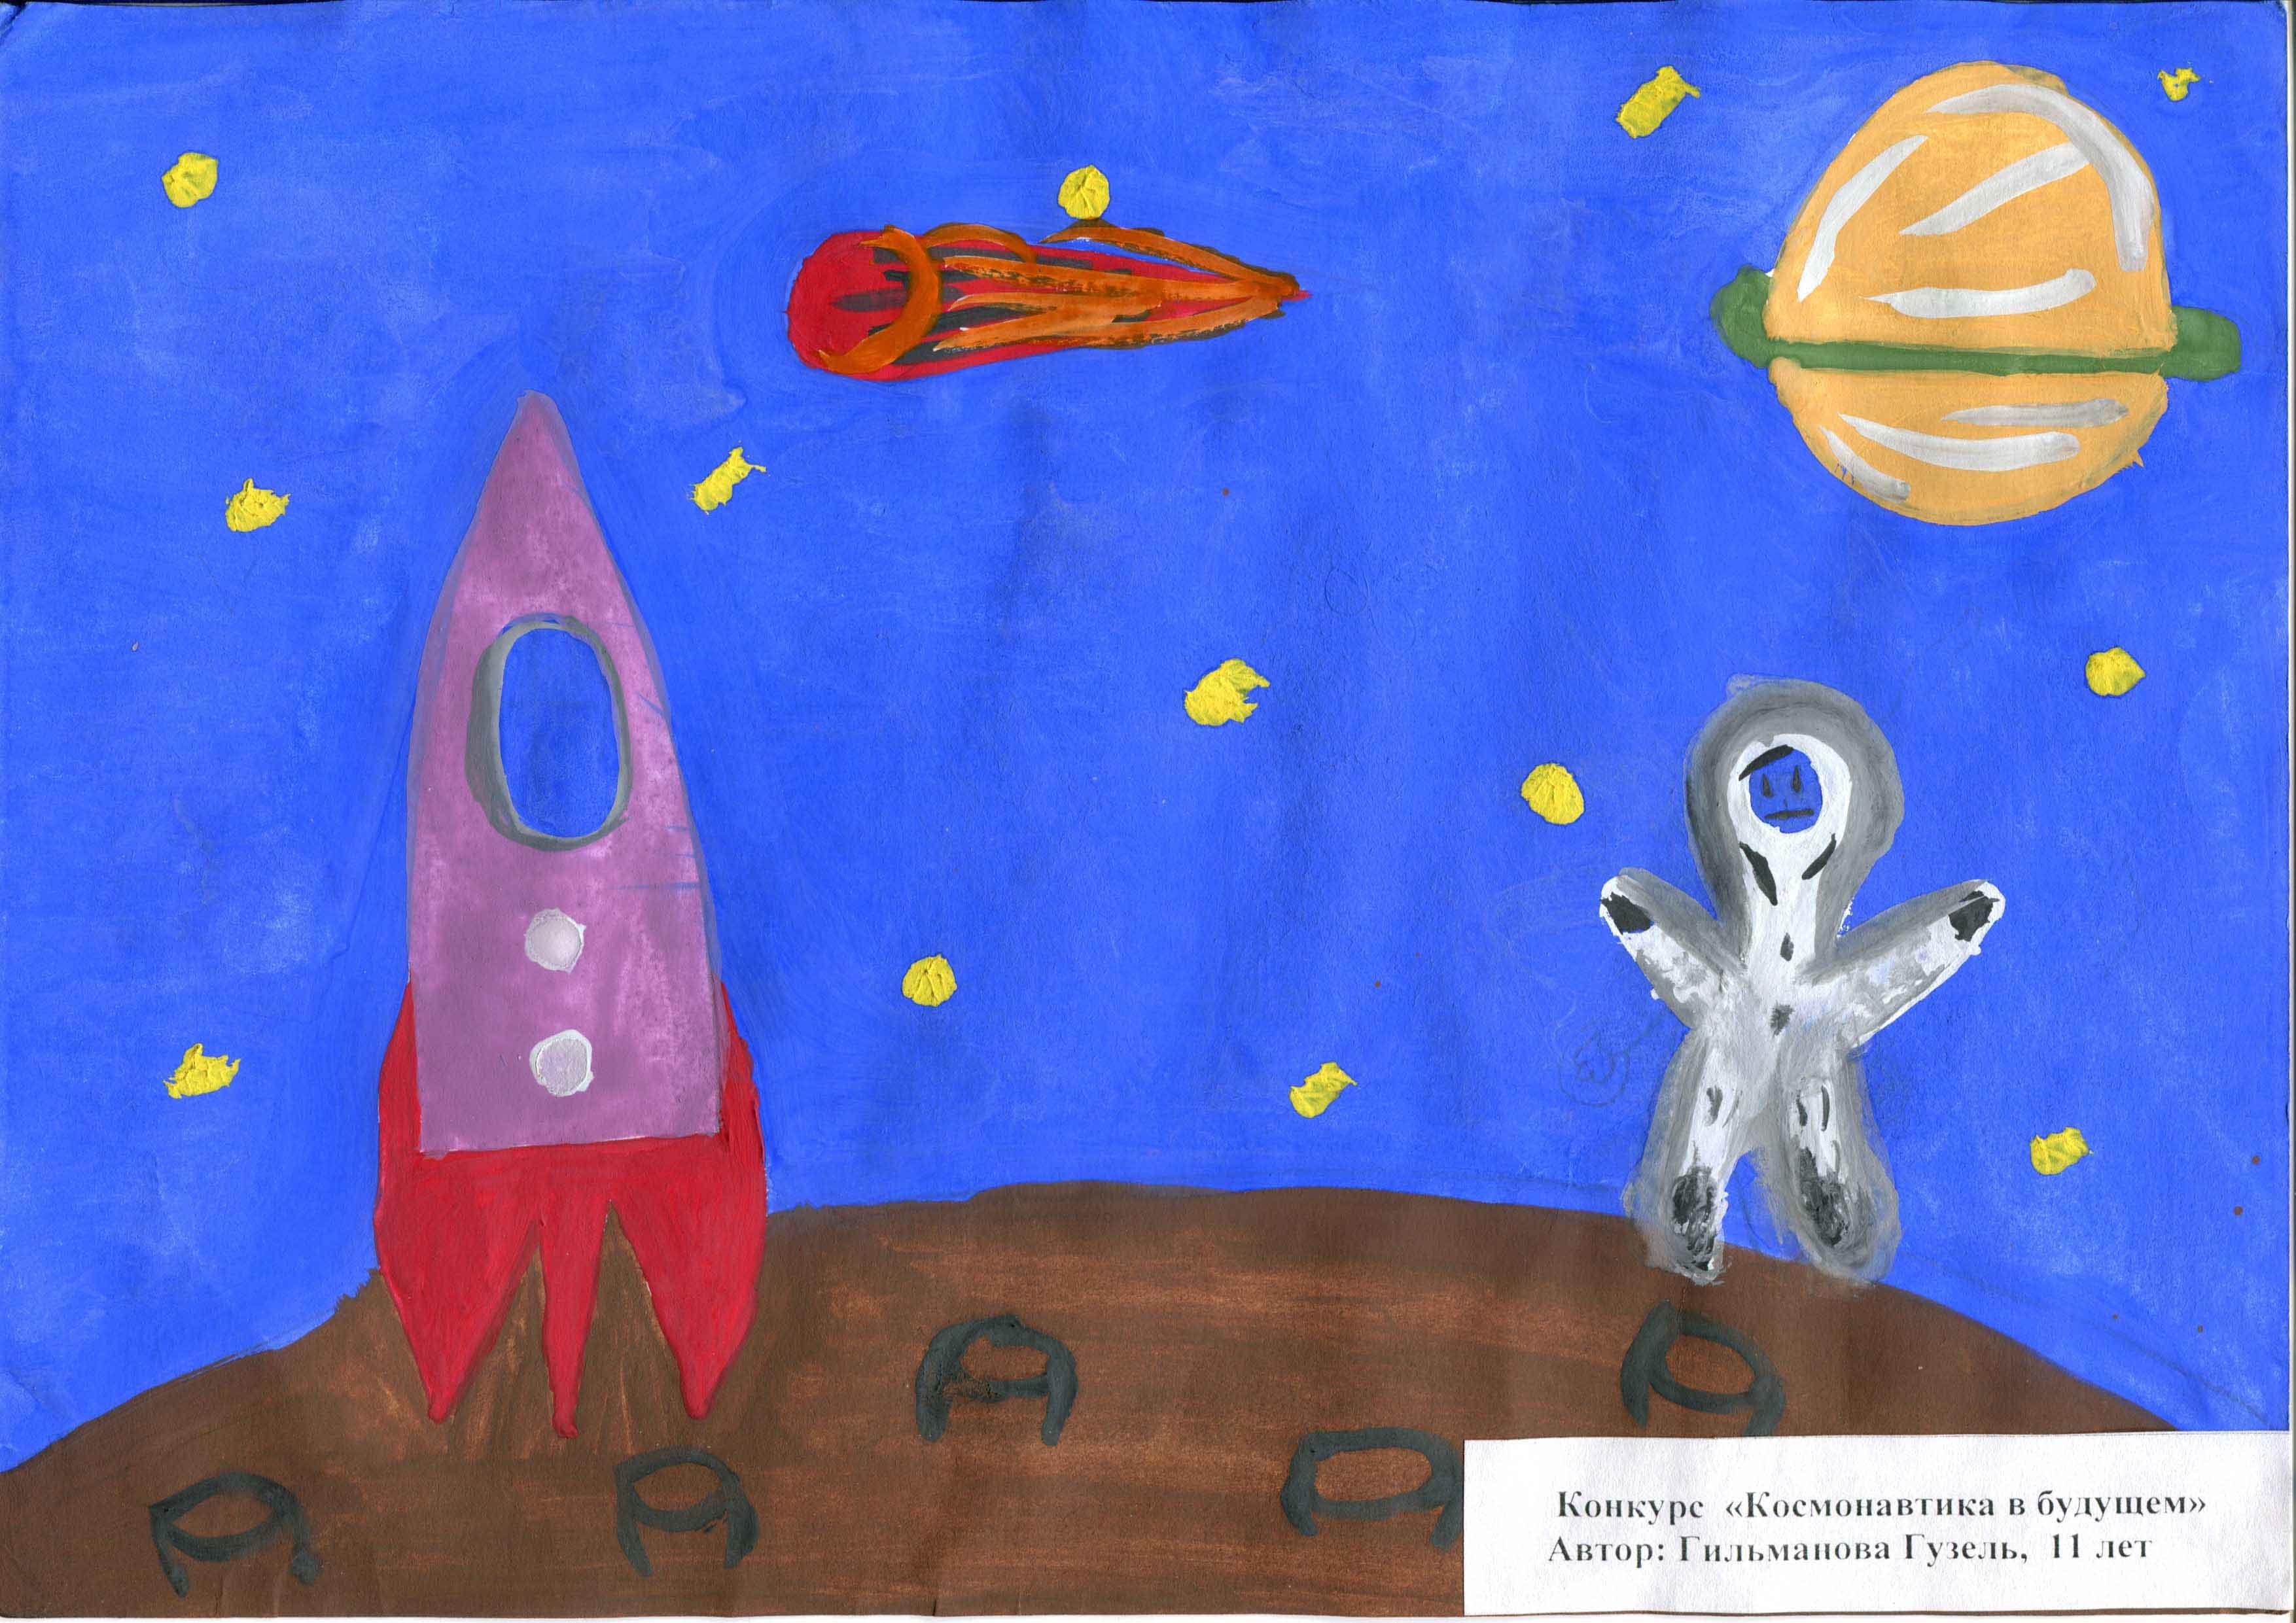 Название конкурсов ко дню космонавтики. Рисунок ко Дню космонавтики. Конкурс рисунков ко Дню космонавтики. Название рисунков ко Дню космонавтики. Рисунок ко Дню космонавтики в детский сад.